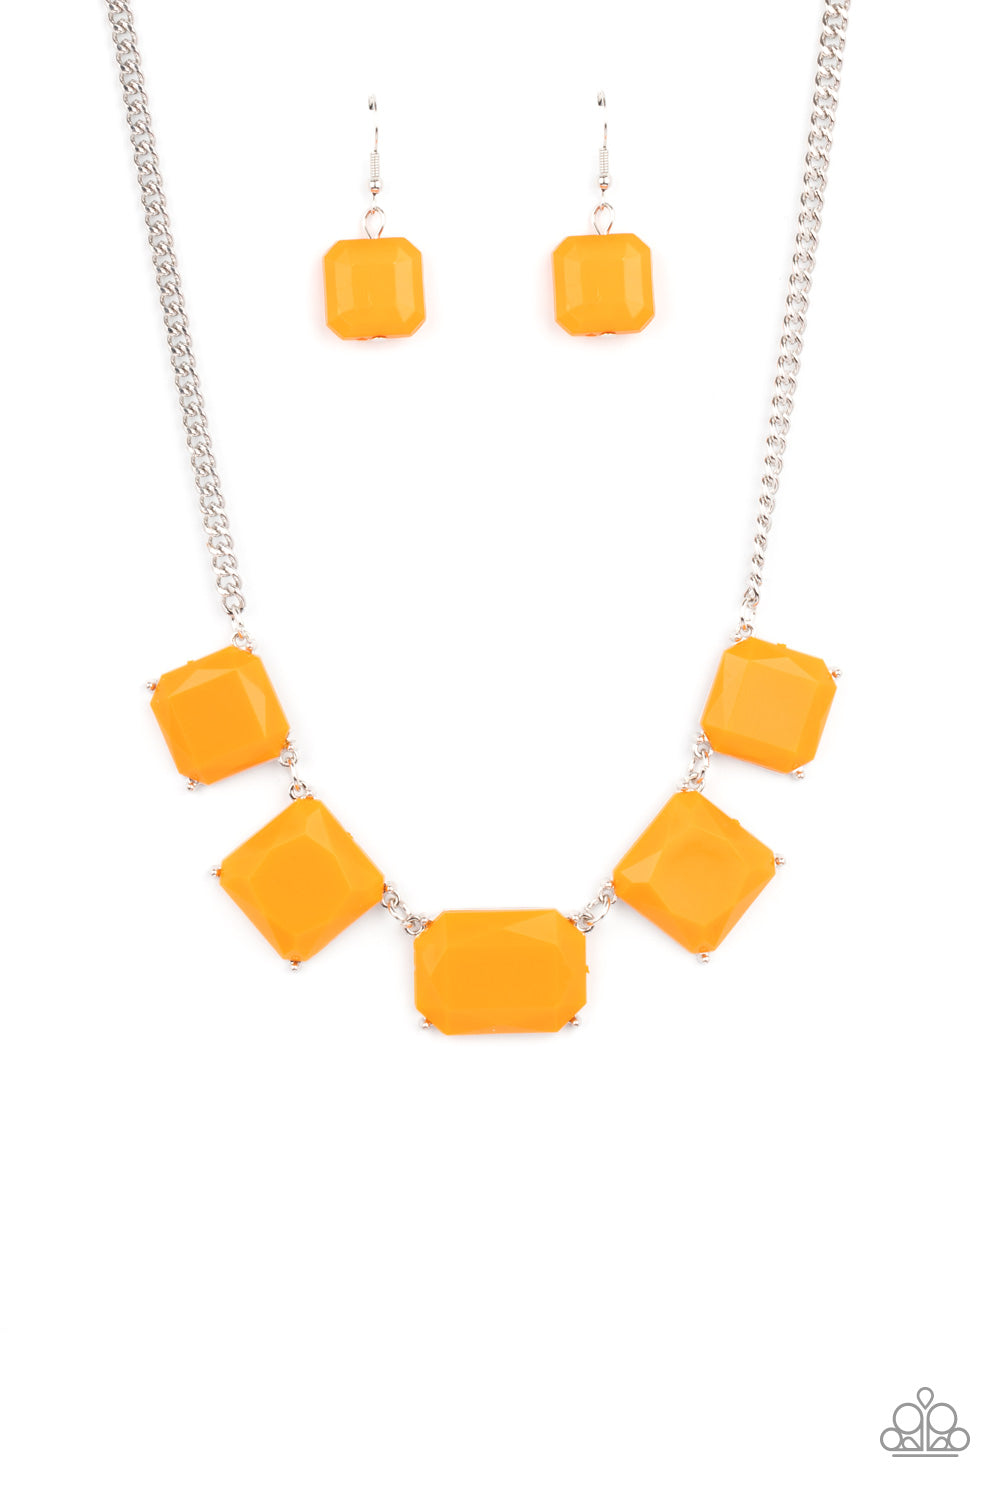 Instant Mood Booster - Orange Necklace